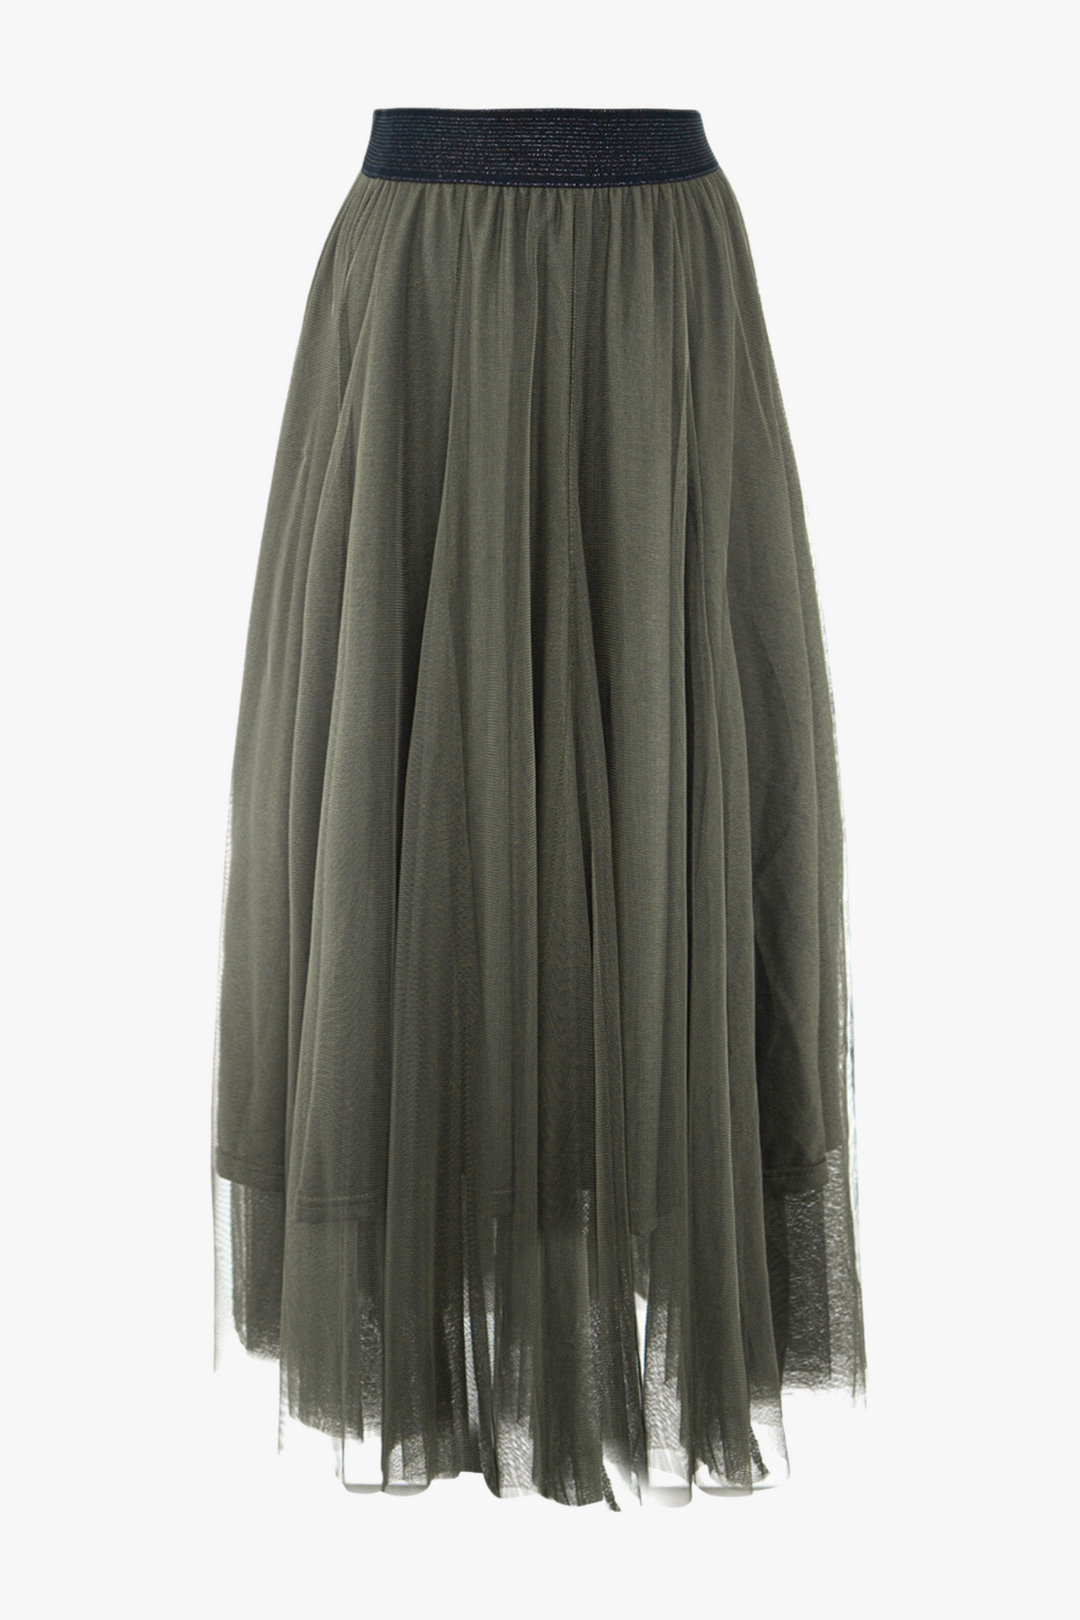 Khaki Plain Tulle Skirt With Waistband